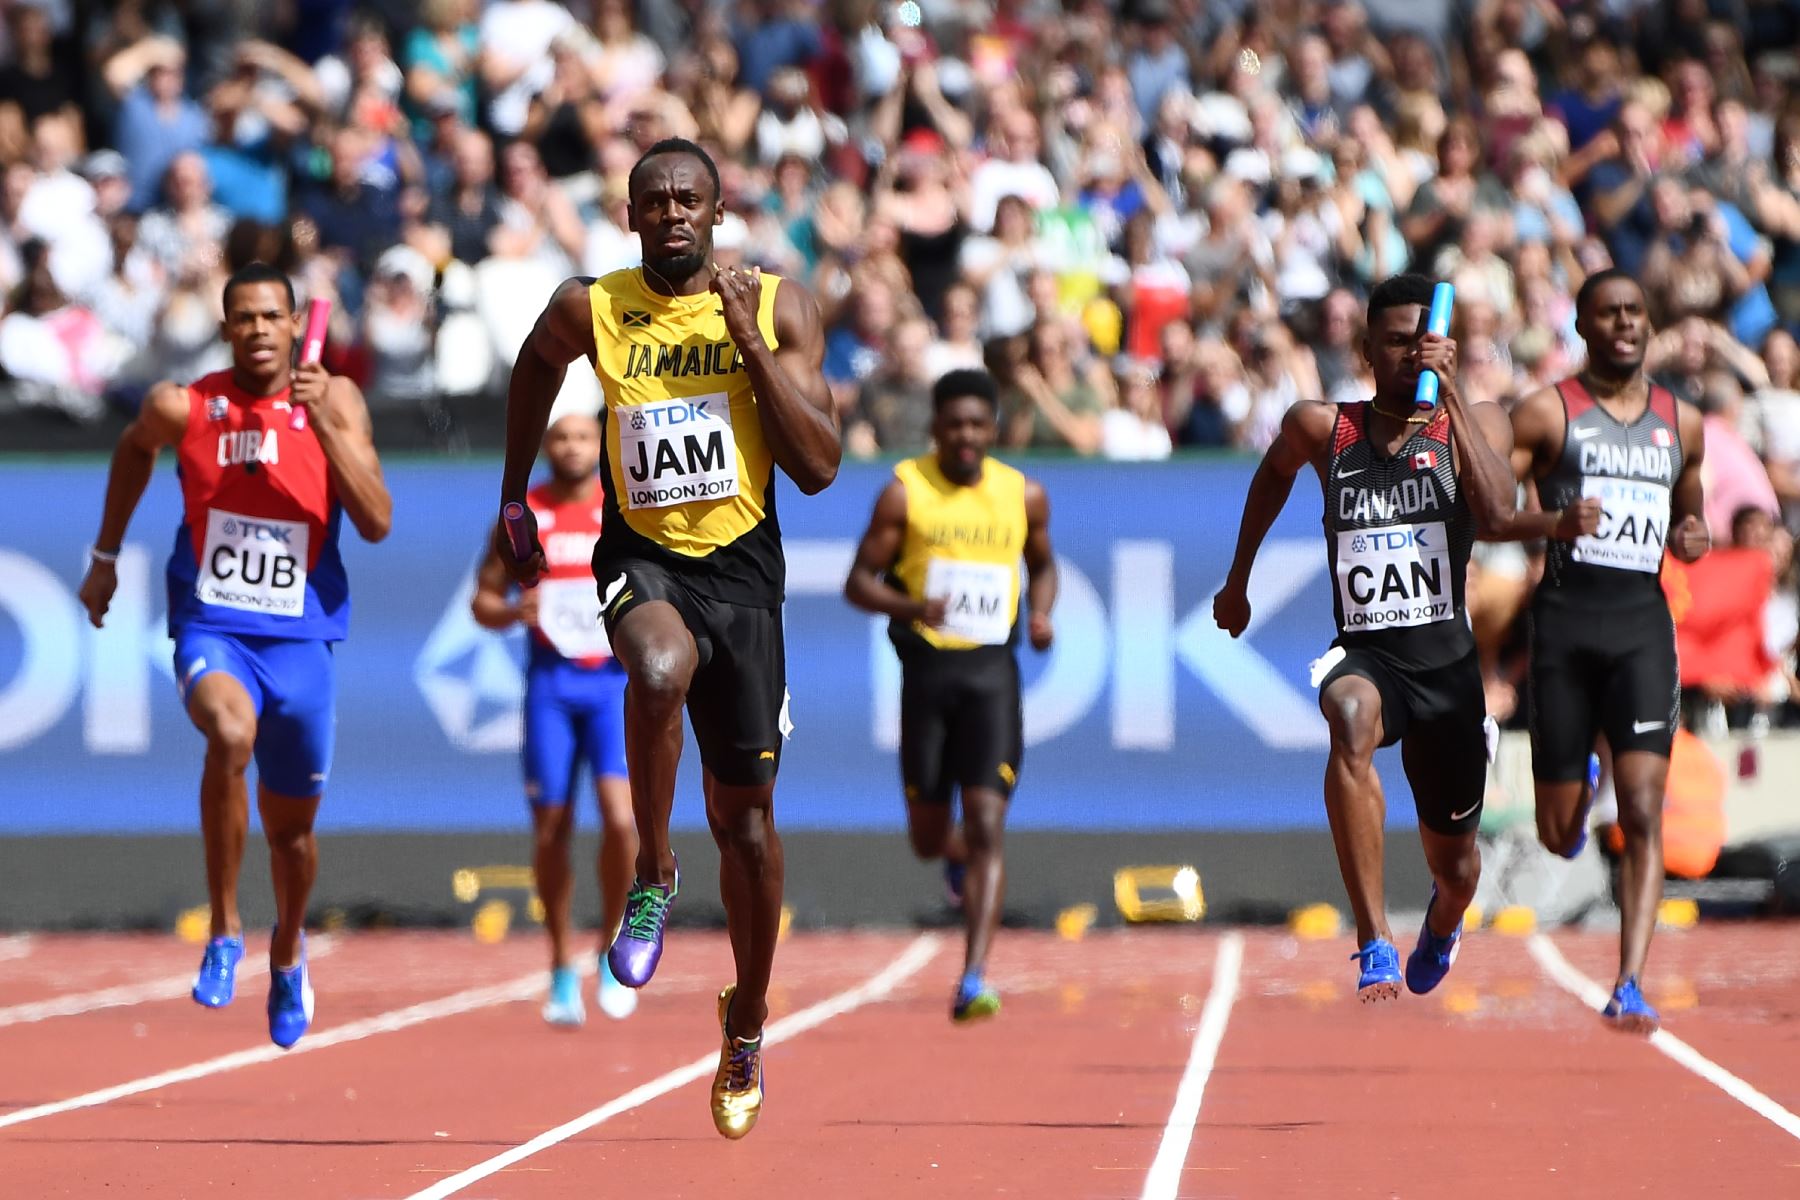 Usain Bolt (c), de Jamaica, corre hacia la línea de meta en la pierna de anclaje delante de Mobolade Ajomale (d) de Canadá y José Luis Gaspar (i), de Cuba, para ganar su calor en el evento de atletismo de relevos 4x100 metros masculino en Londres. Foto: AFP.